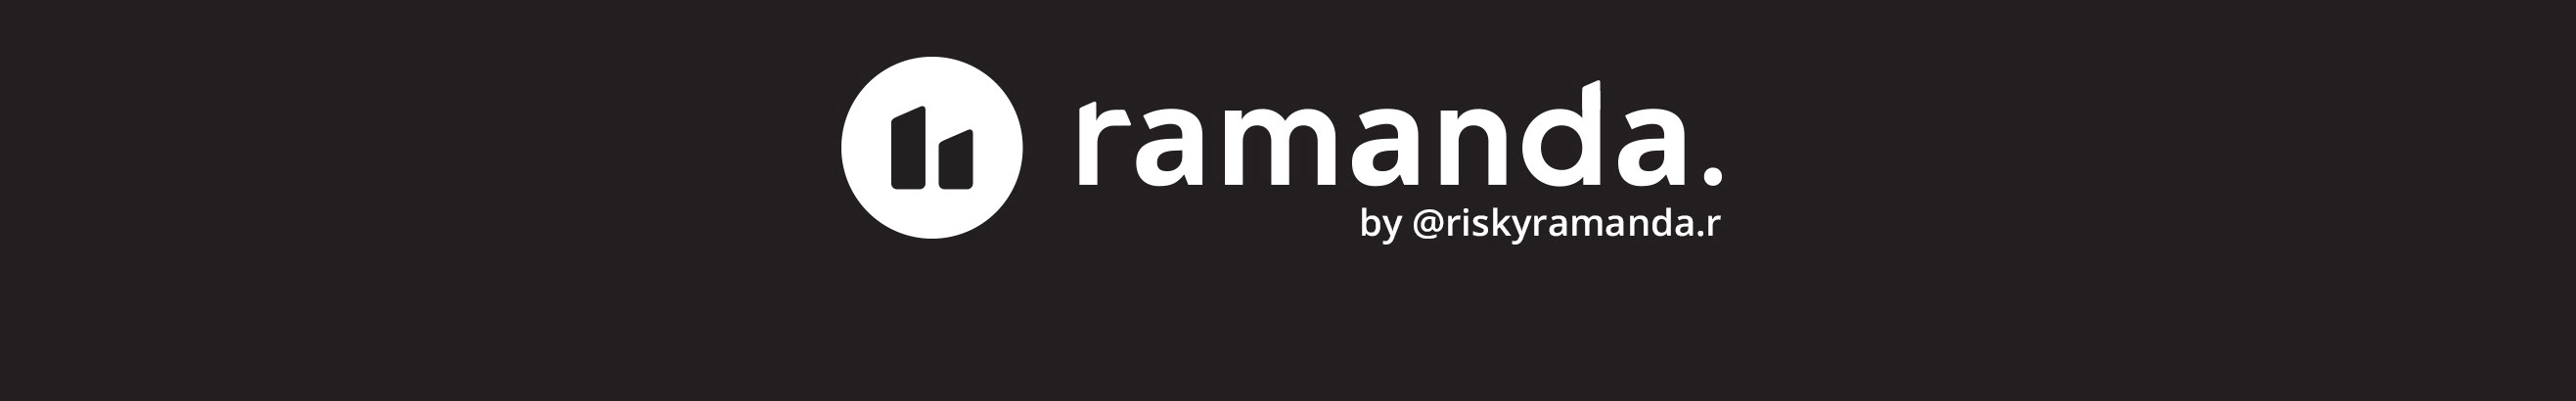 Banner de perfil de Risky Ramanda